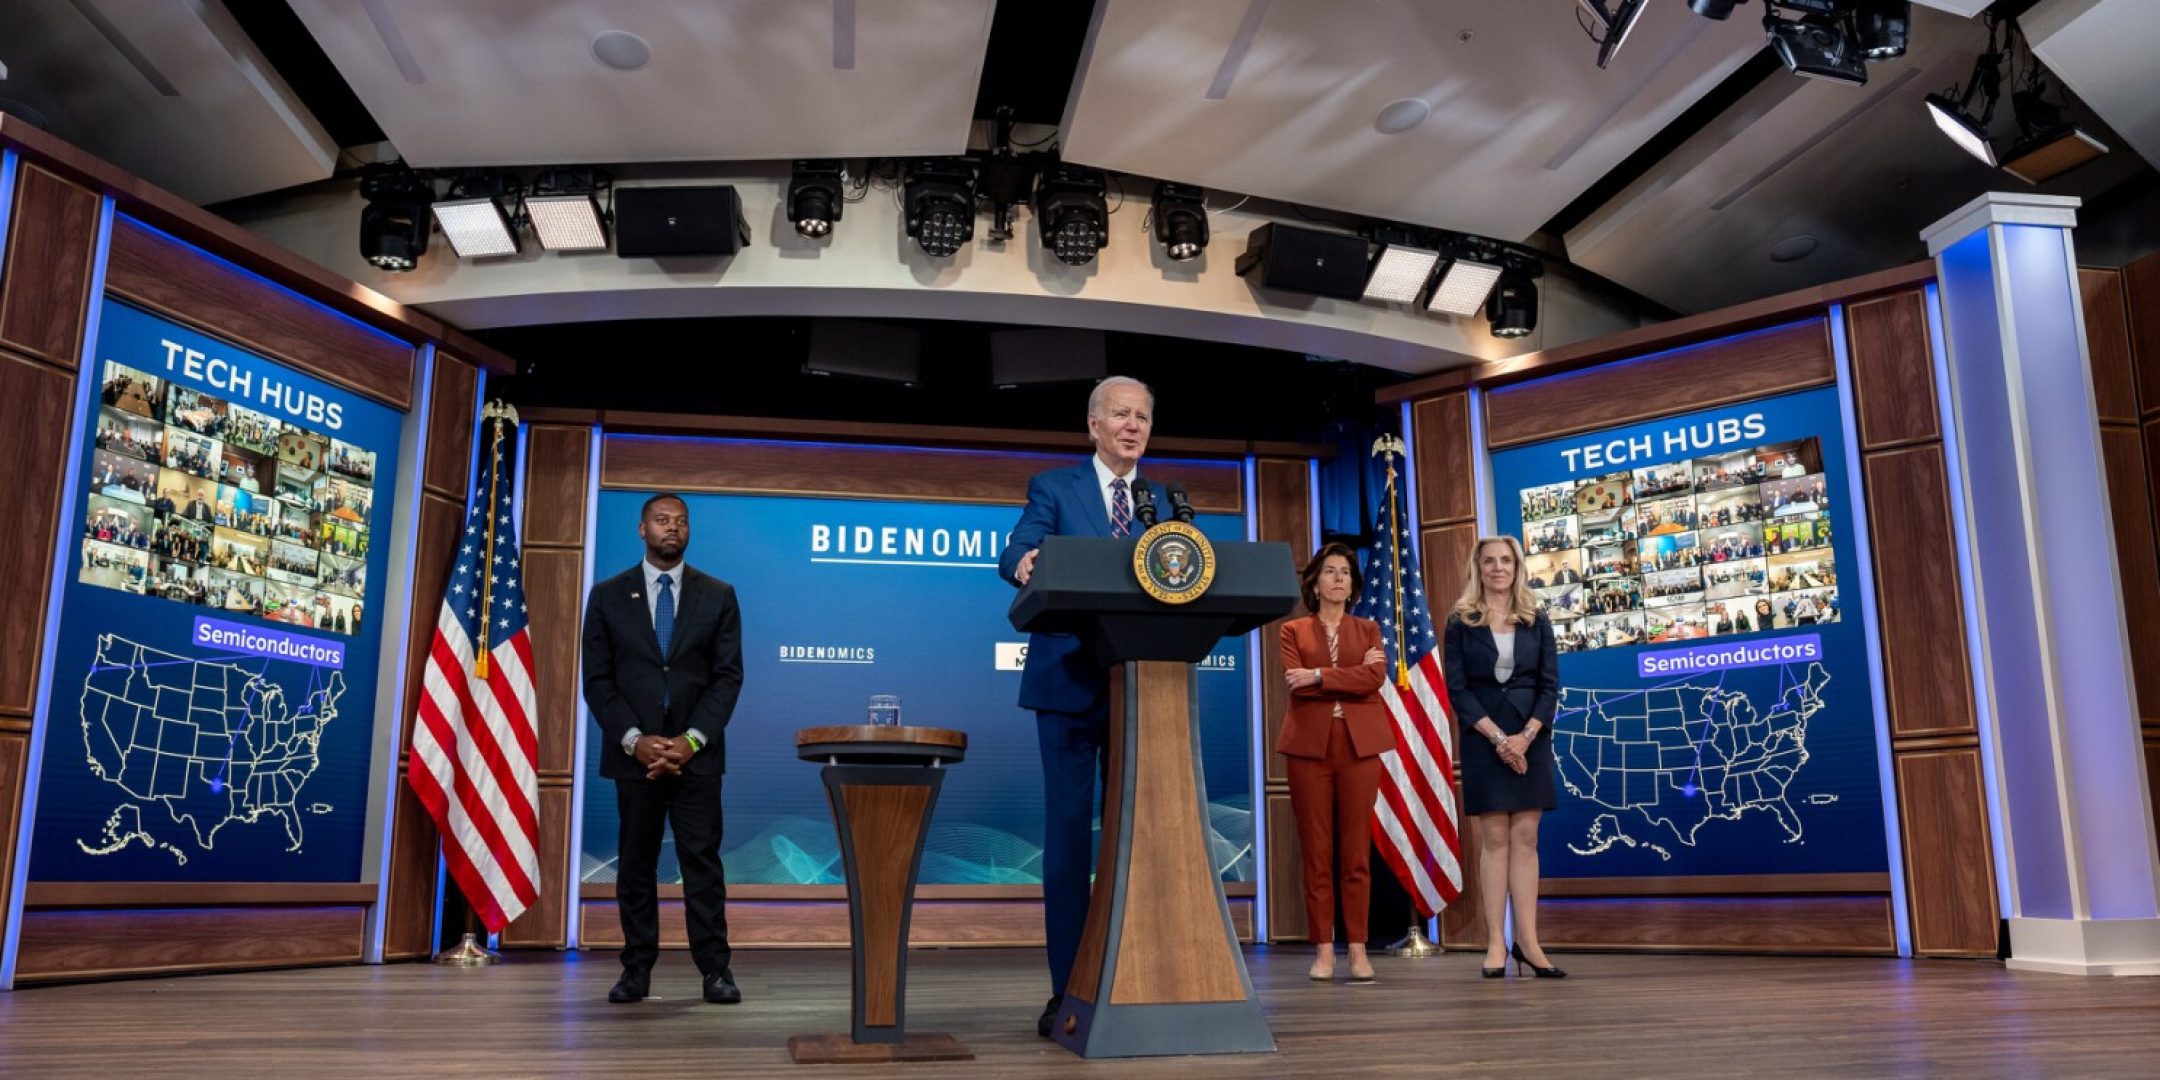 Le président Joe Biden annonce la désignation des nouveaux Tech Hubs avec les cadres de son administration le 23 octobre. Crédit : Maison Blanche.